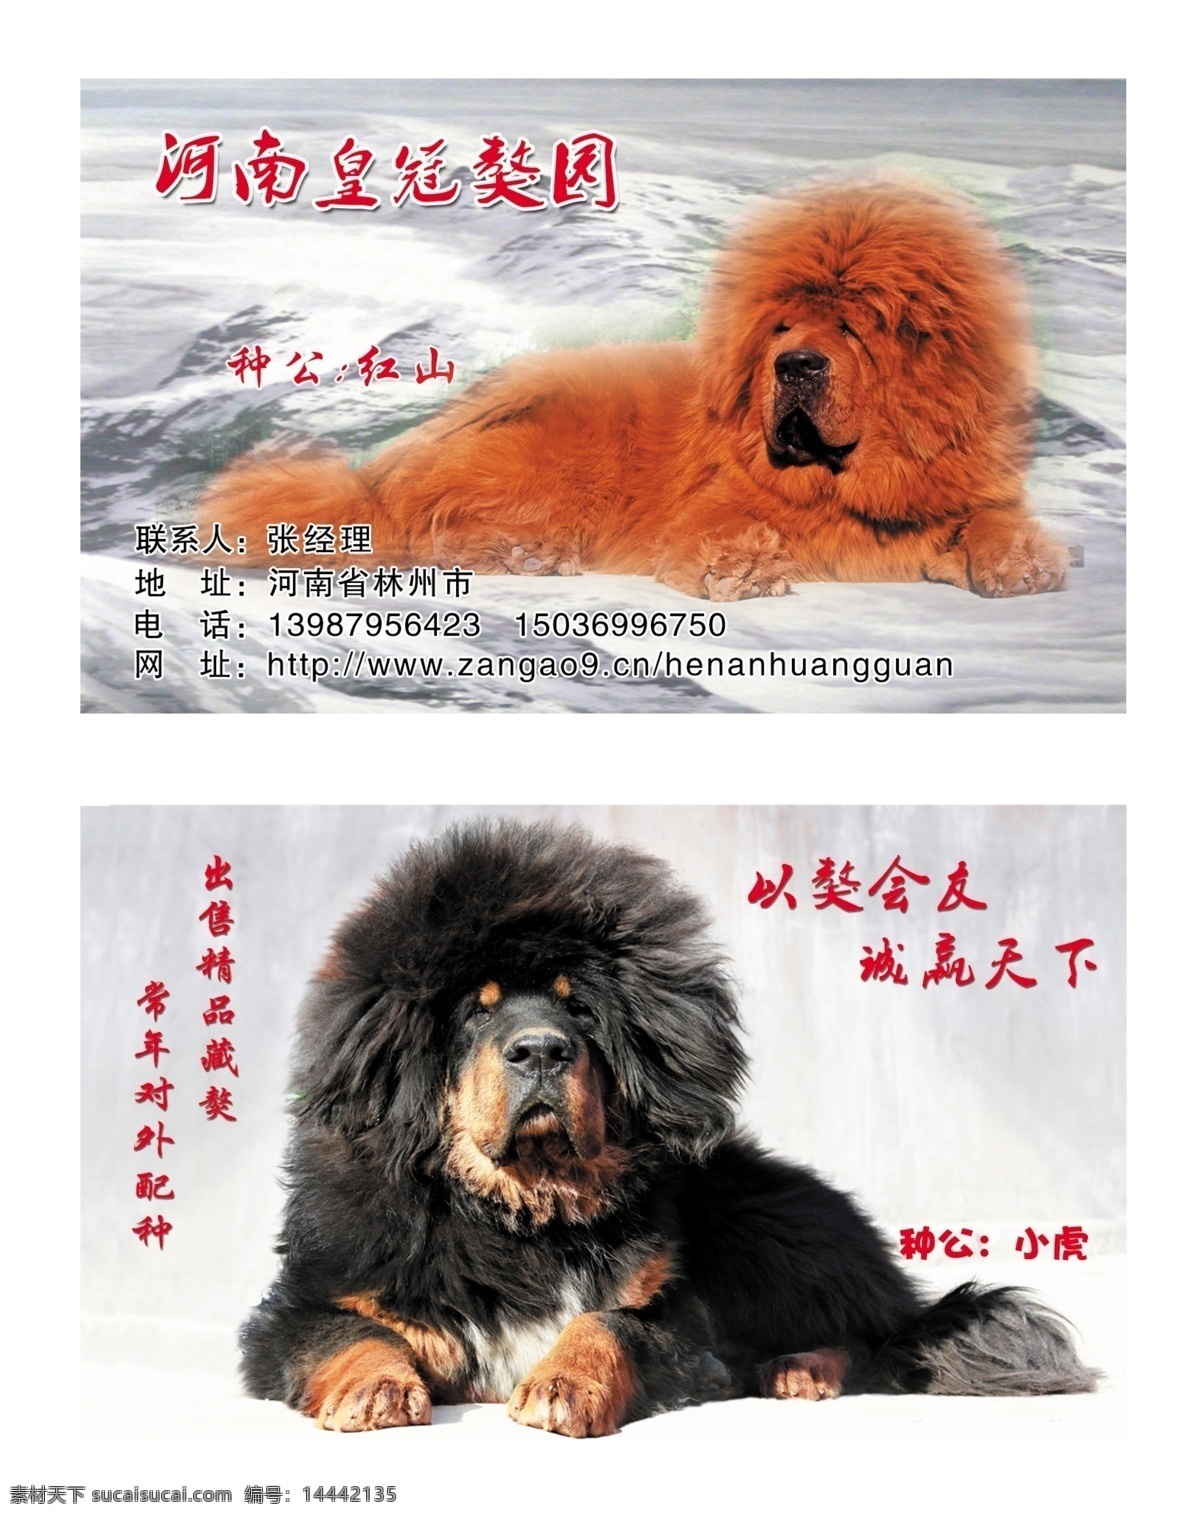 藏獒园名片 藏獒名片 雪山 狗名片 名片卡片 广告设计模板 源文件